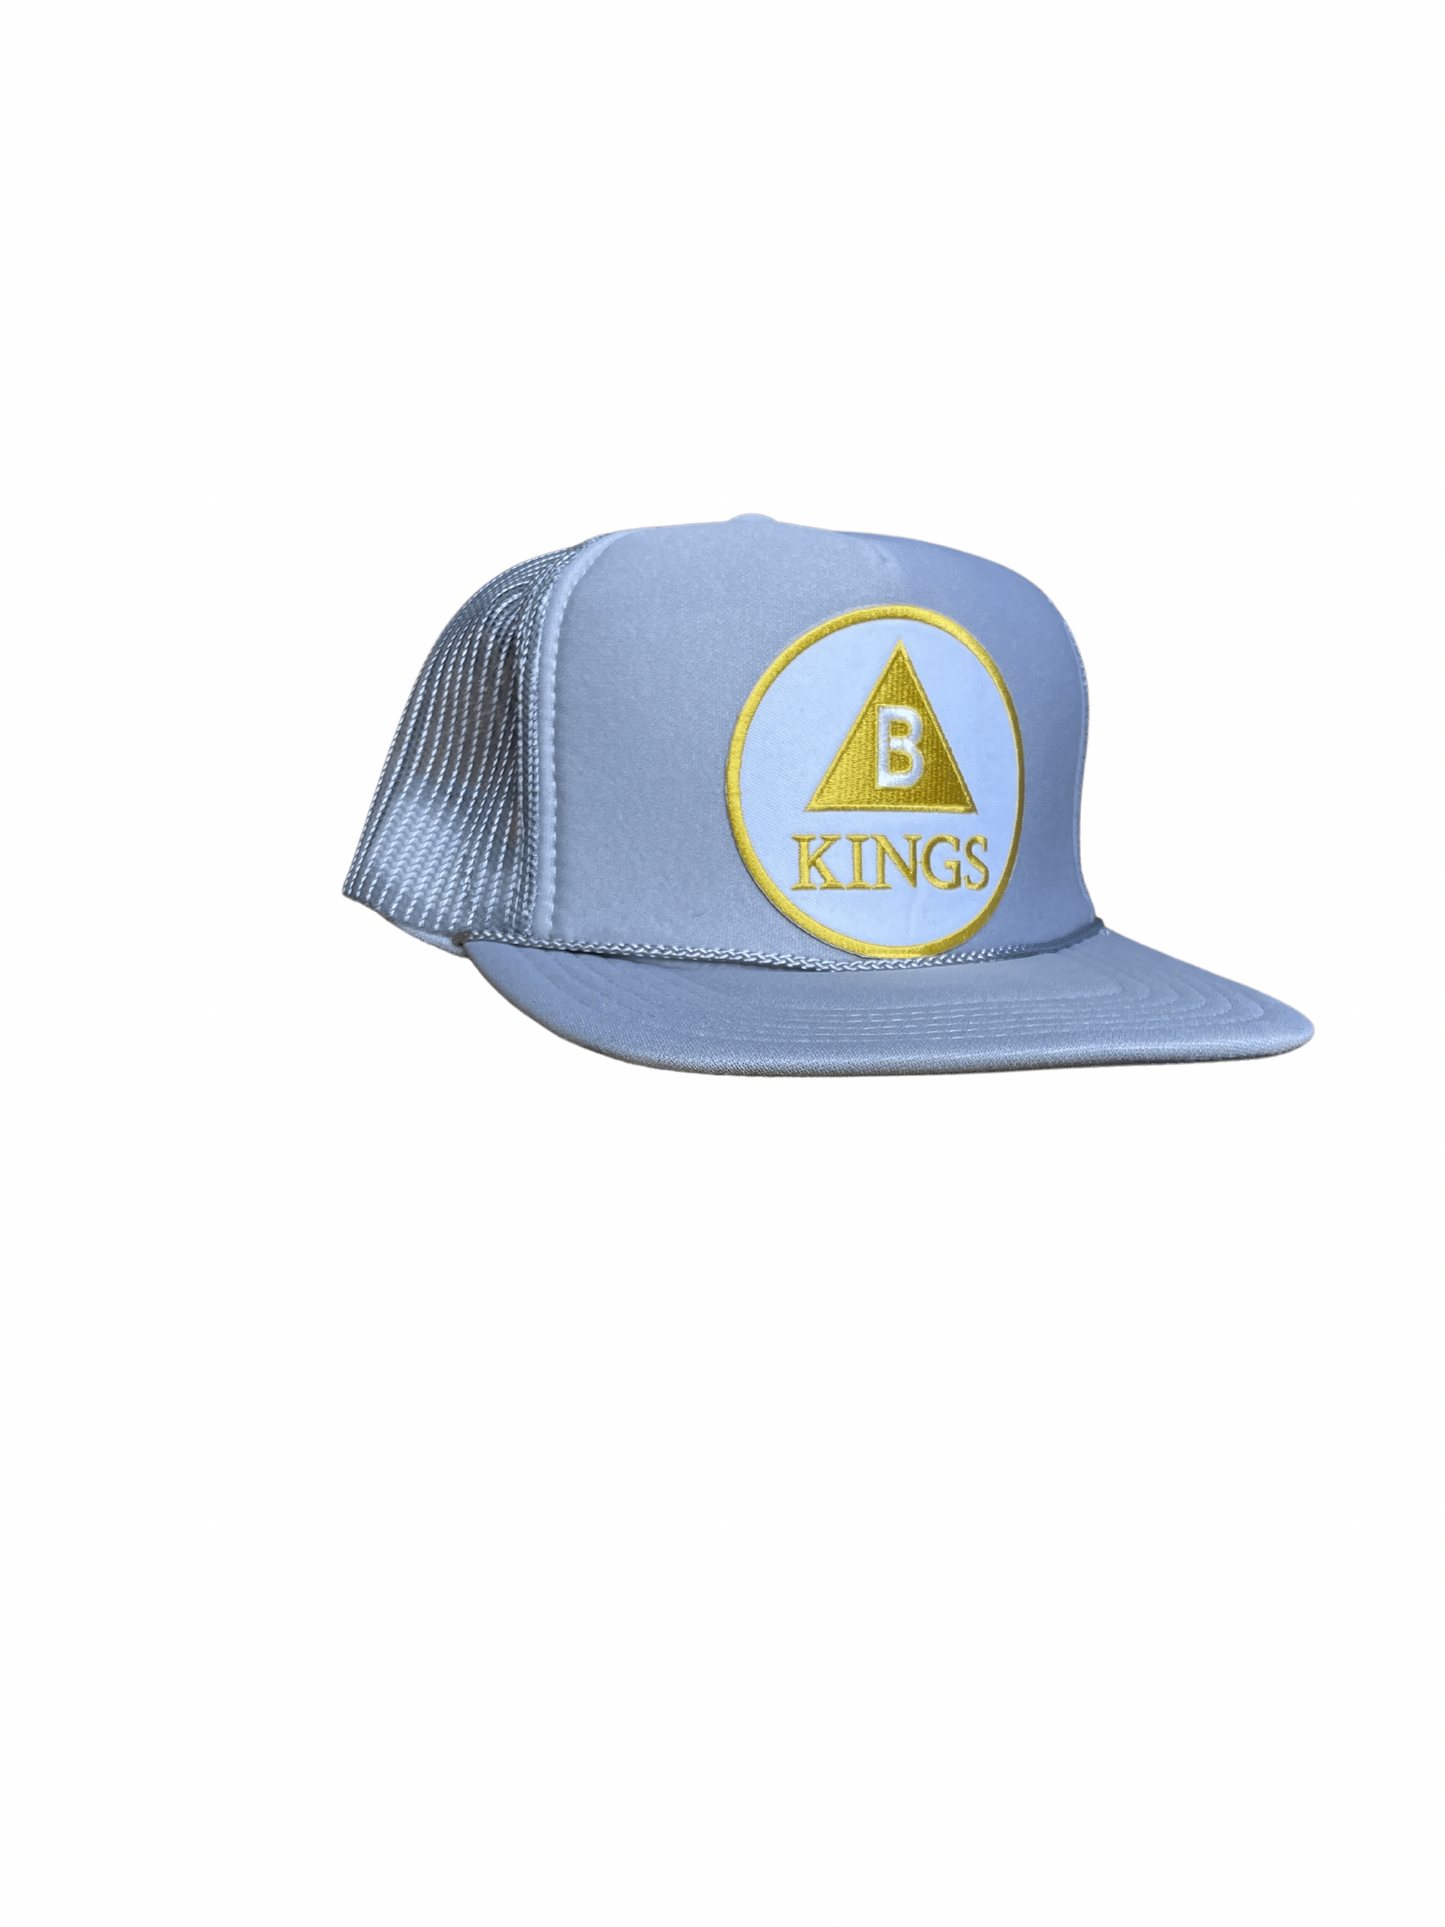 Kings Grey Trucker Hat